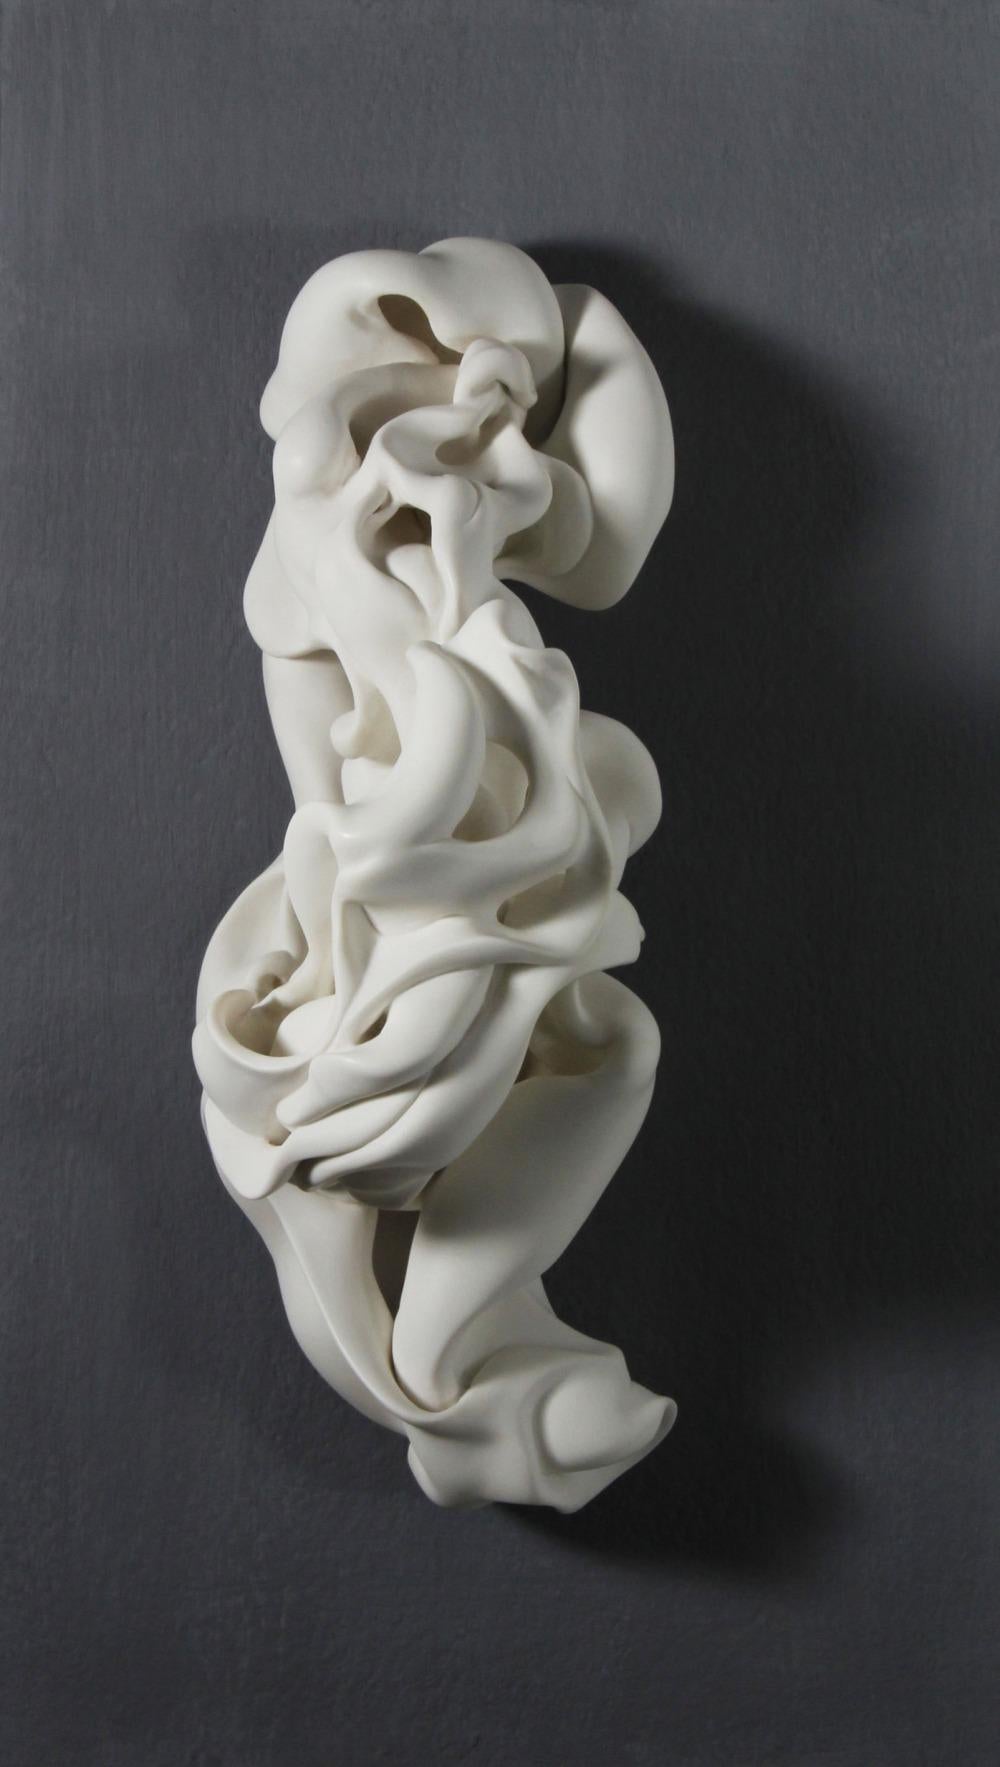 Motion ist eine einzigartige Skulptur der zeitgenössischen Künstlerin Sharon Brill. Es handelt sich um eine mit der Drehscheibe gedrehte, veränderte und sandgestrahlte Porzellanplastik mit den Maßen 36 × 15 × 13 cm (14,2 × 5,9 × 5,1 in).
Diese